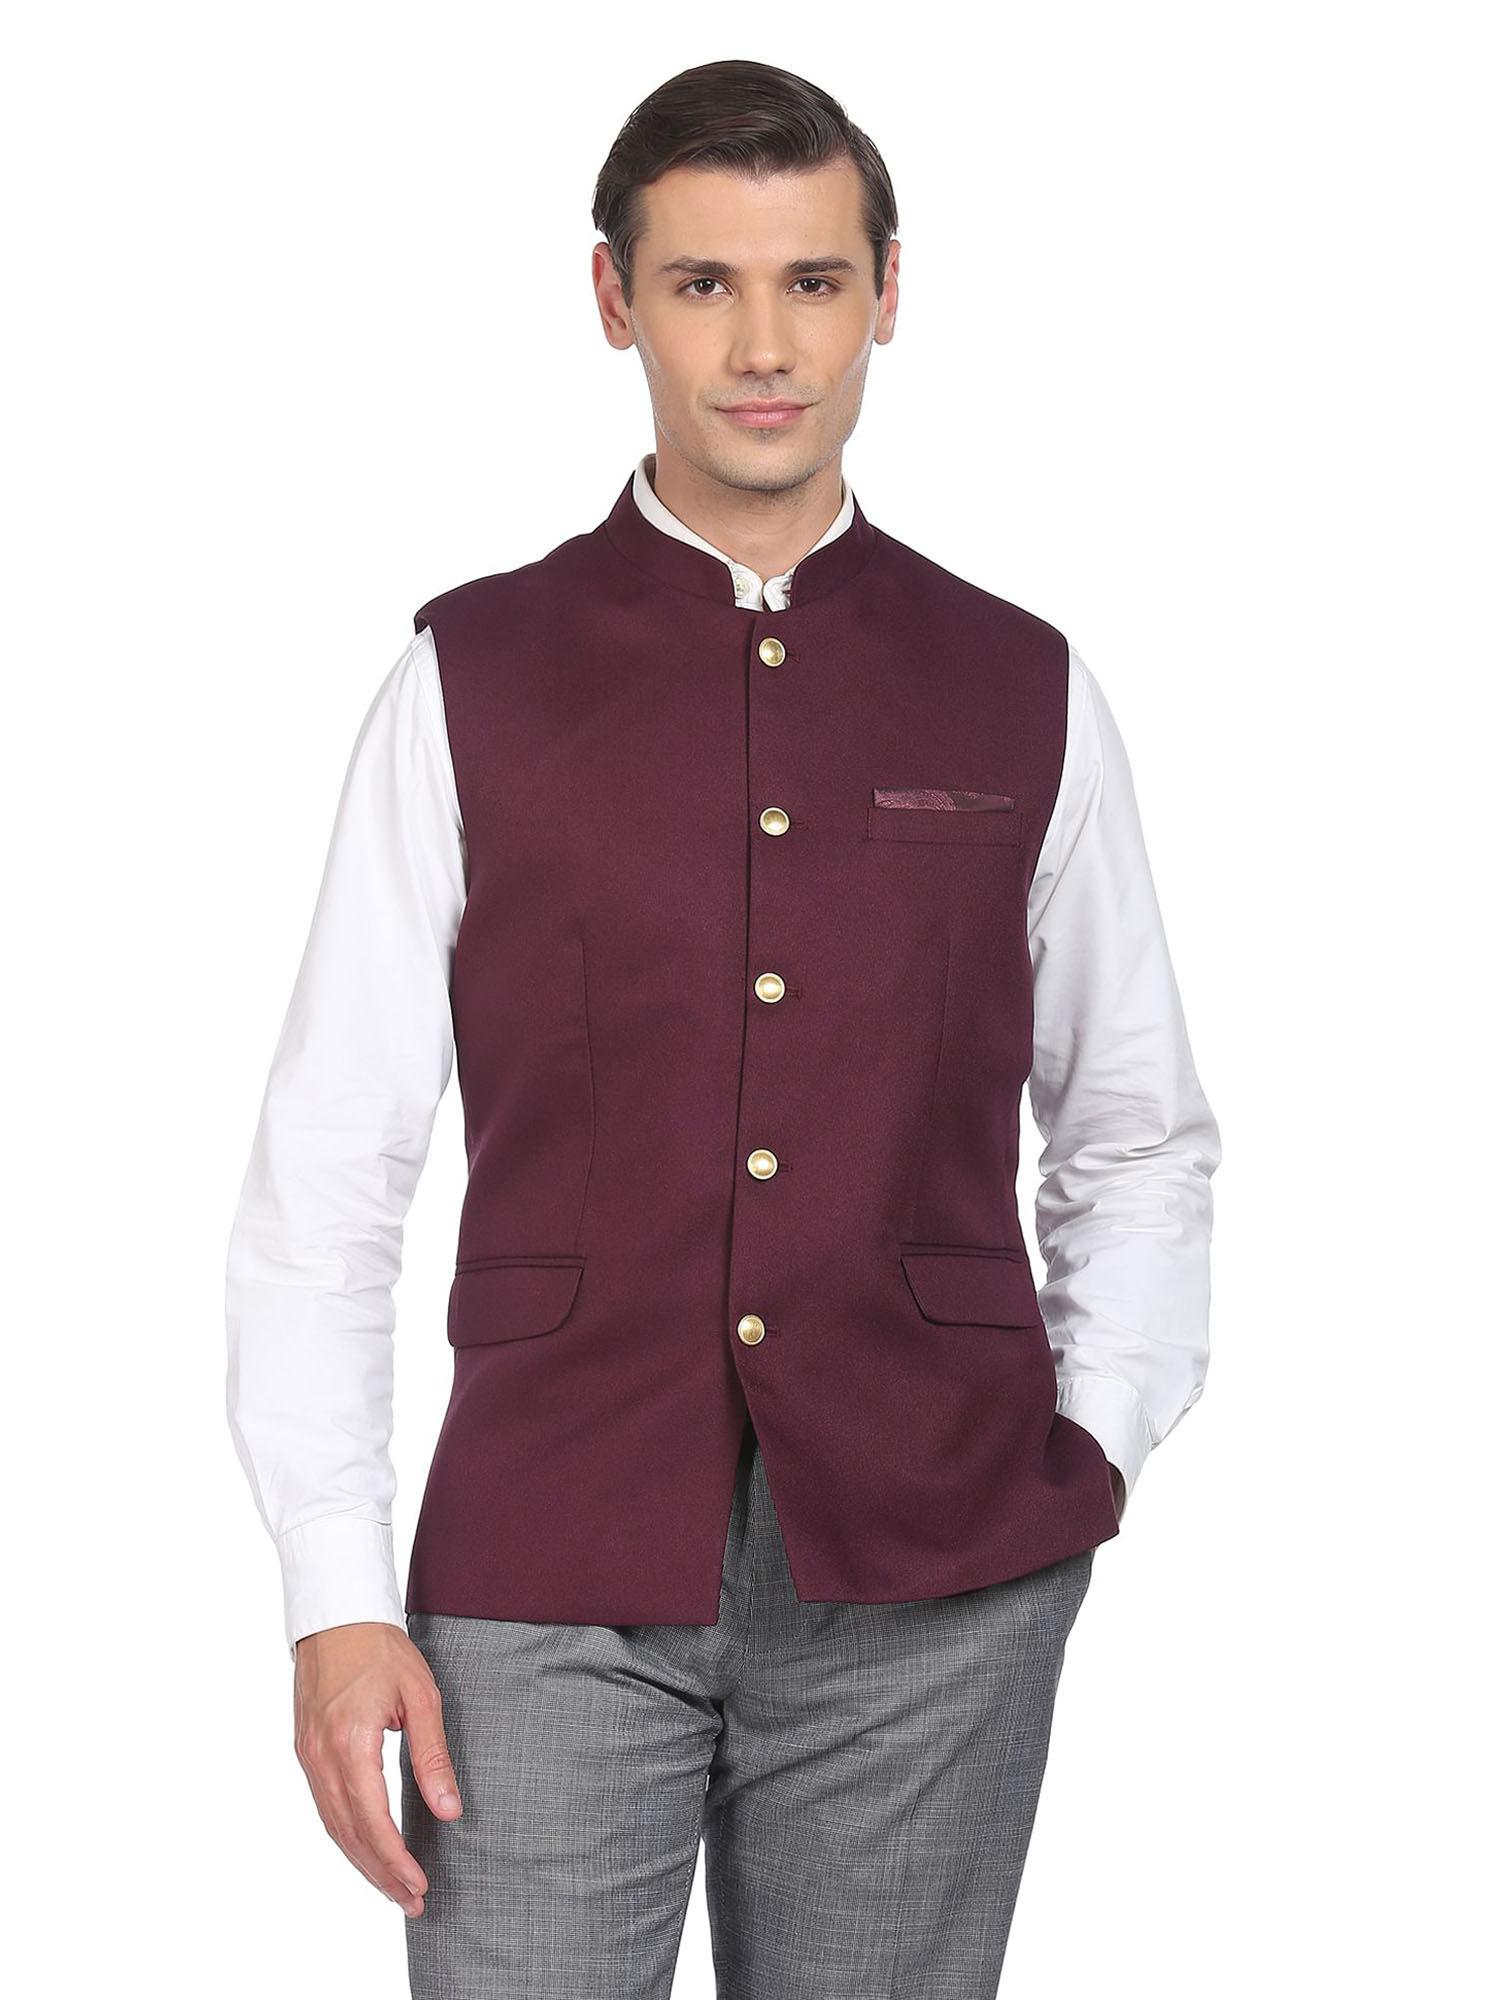 men-wine-textured-tailored-regular-fit-nehru-jacket